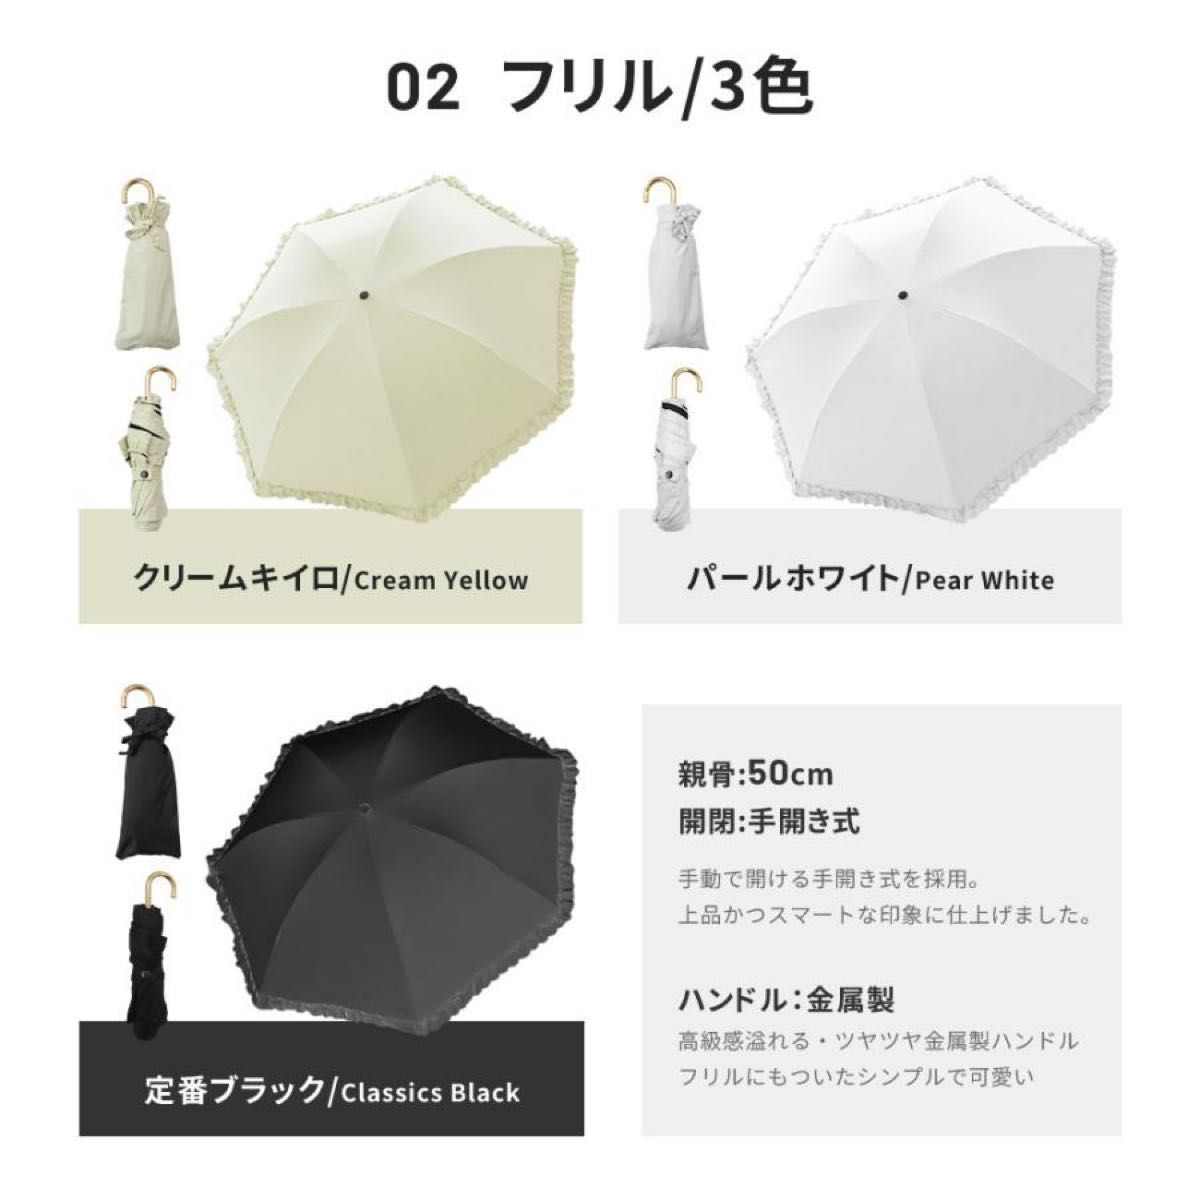 日傘 完全遮光 折りたたみ傘 UV対策 超撥水 軽量 傘 レディース 6本骨 UPF50+ 紫外線カット 晴雨兼用 折り畳み 雨傘